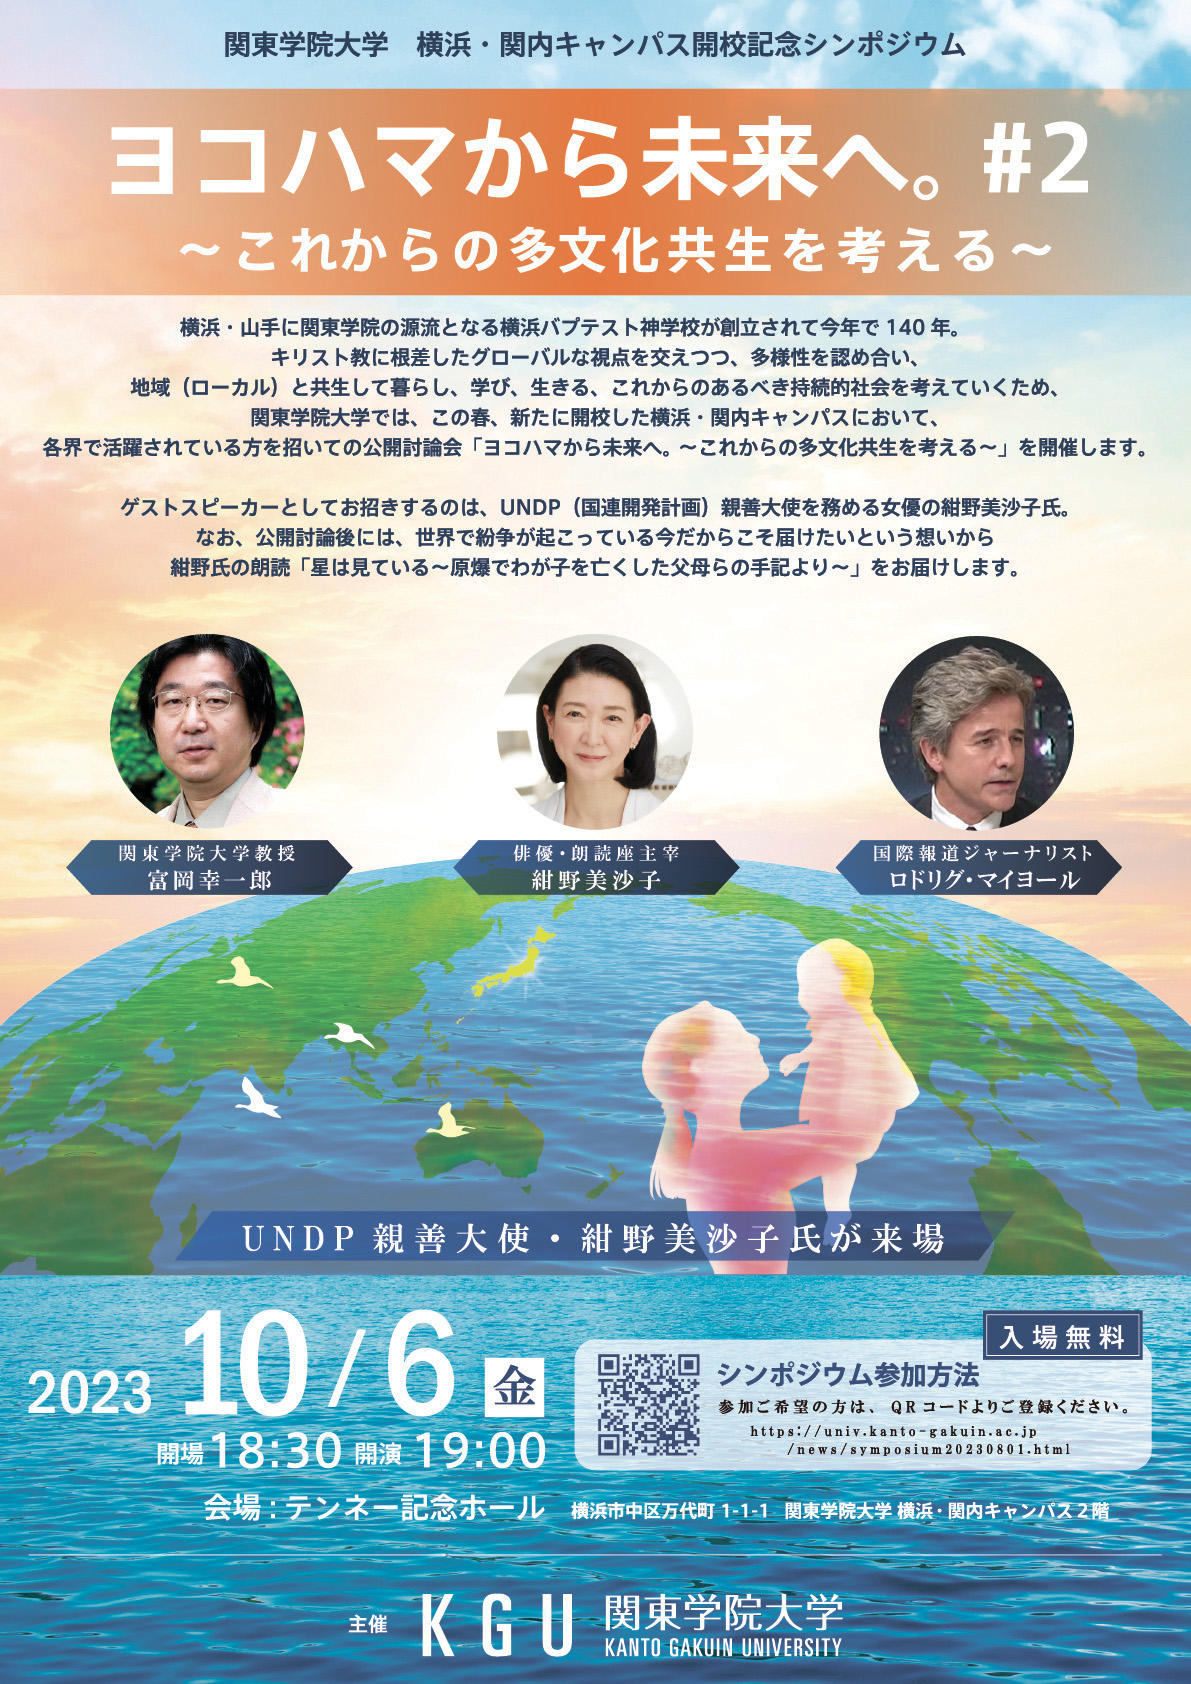 関東学院大学・横浜 関内キャンパス開校記念公開討論会 第2回「ヨコハマから未来へ。」開催のお知らせ